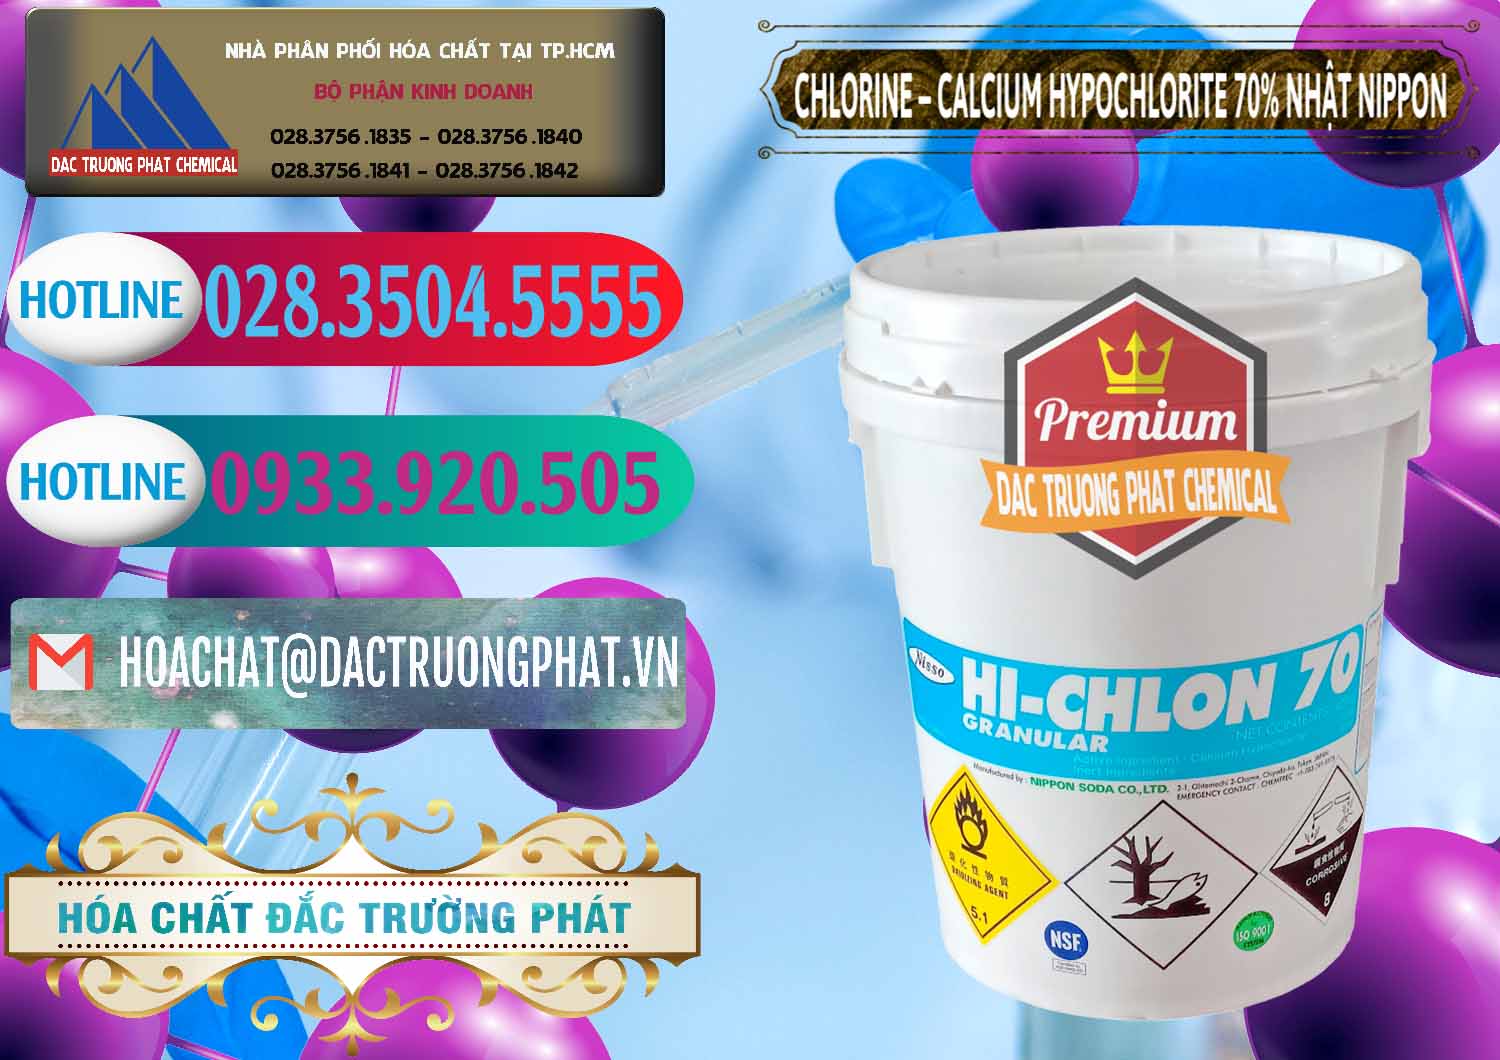 Cty bán và cung cấp Clorin – Chlorine 70% Nippon Soda Nhật Bản Japan - 0055 - Cty chuyên bán - cung cấp hóa chất tại TP.HCM - truongphat.vn